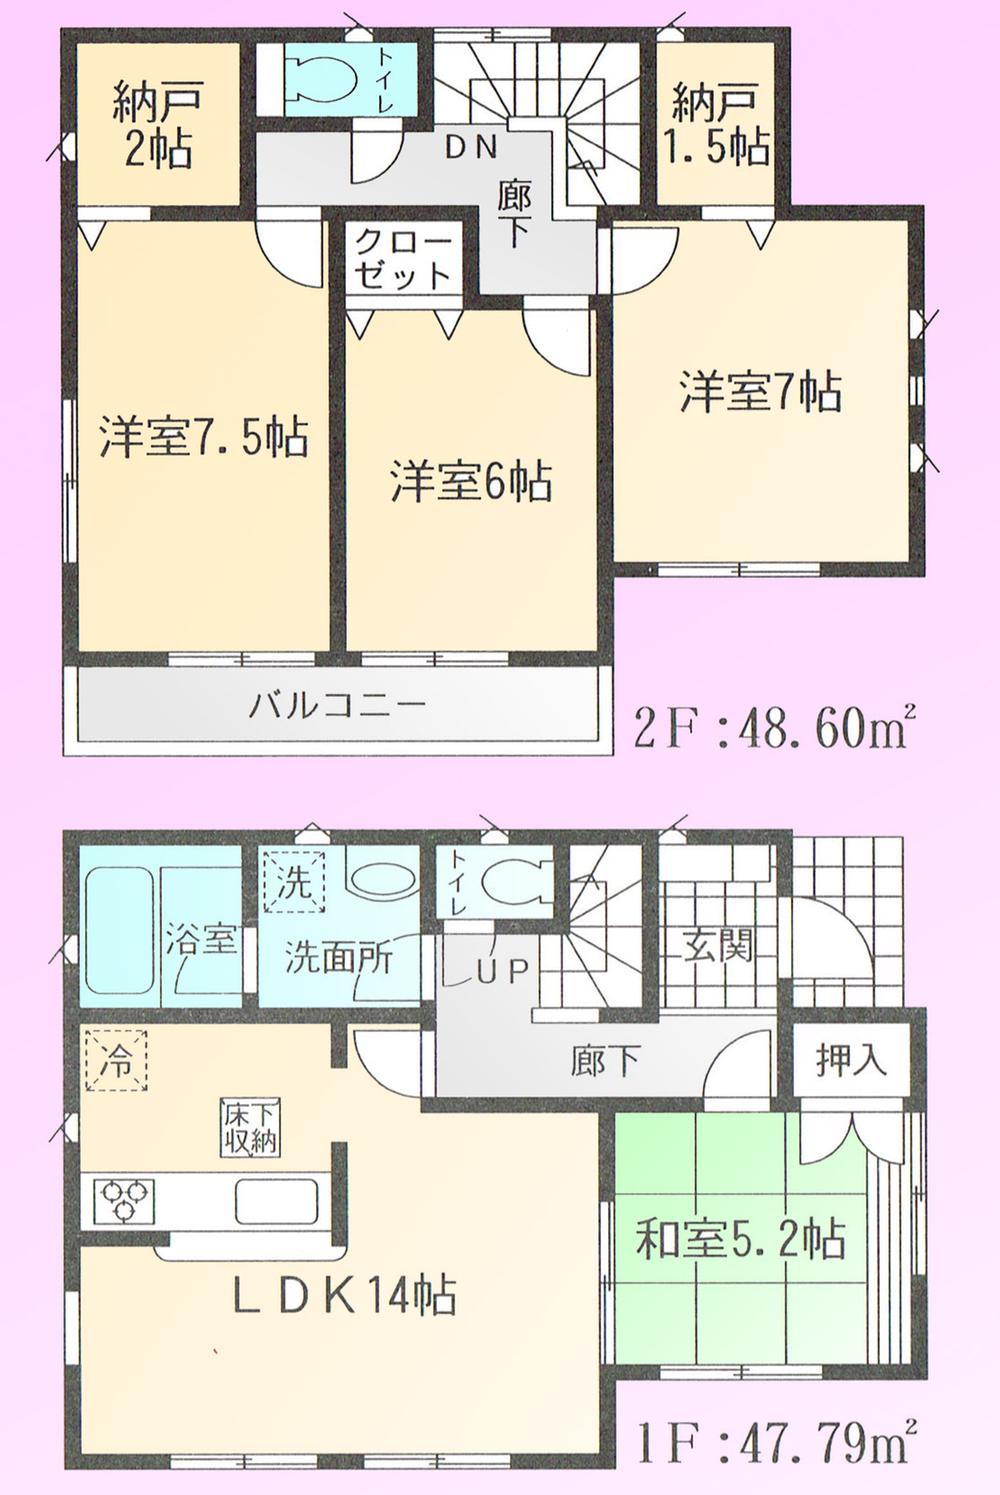 Floor plan. 19,800,000 yen, 4LDK + 2S (storeroom), Land area 114.17 sq m , Building area 96.39 sq m